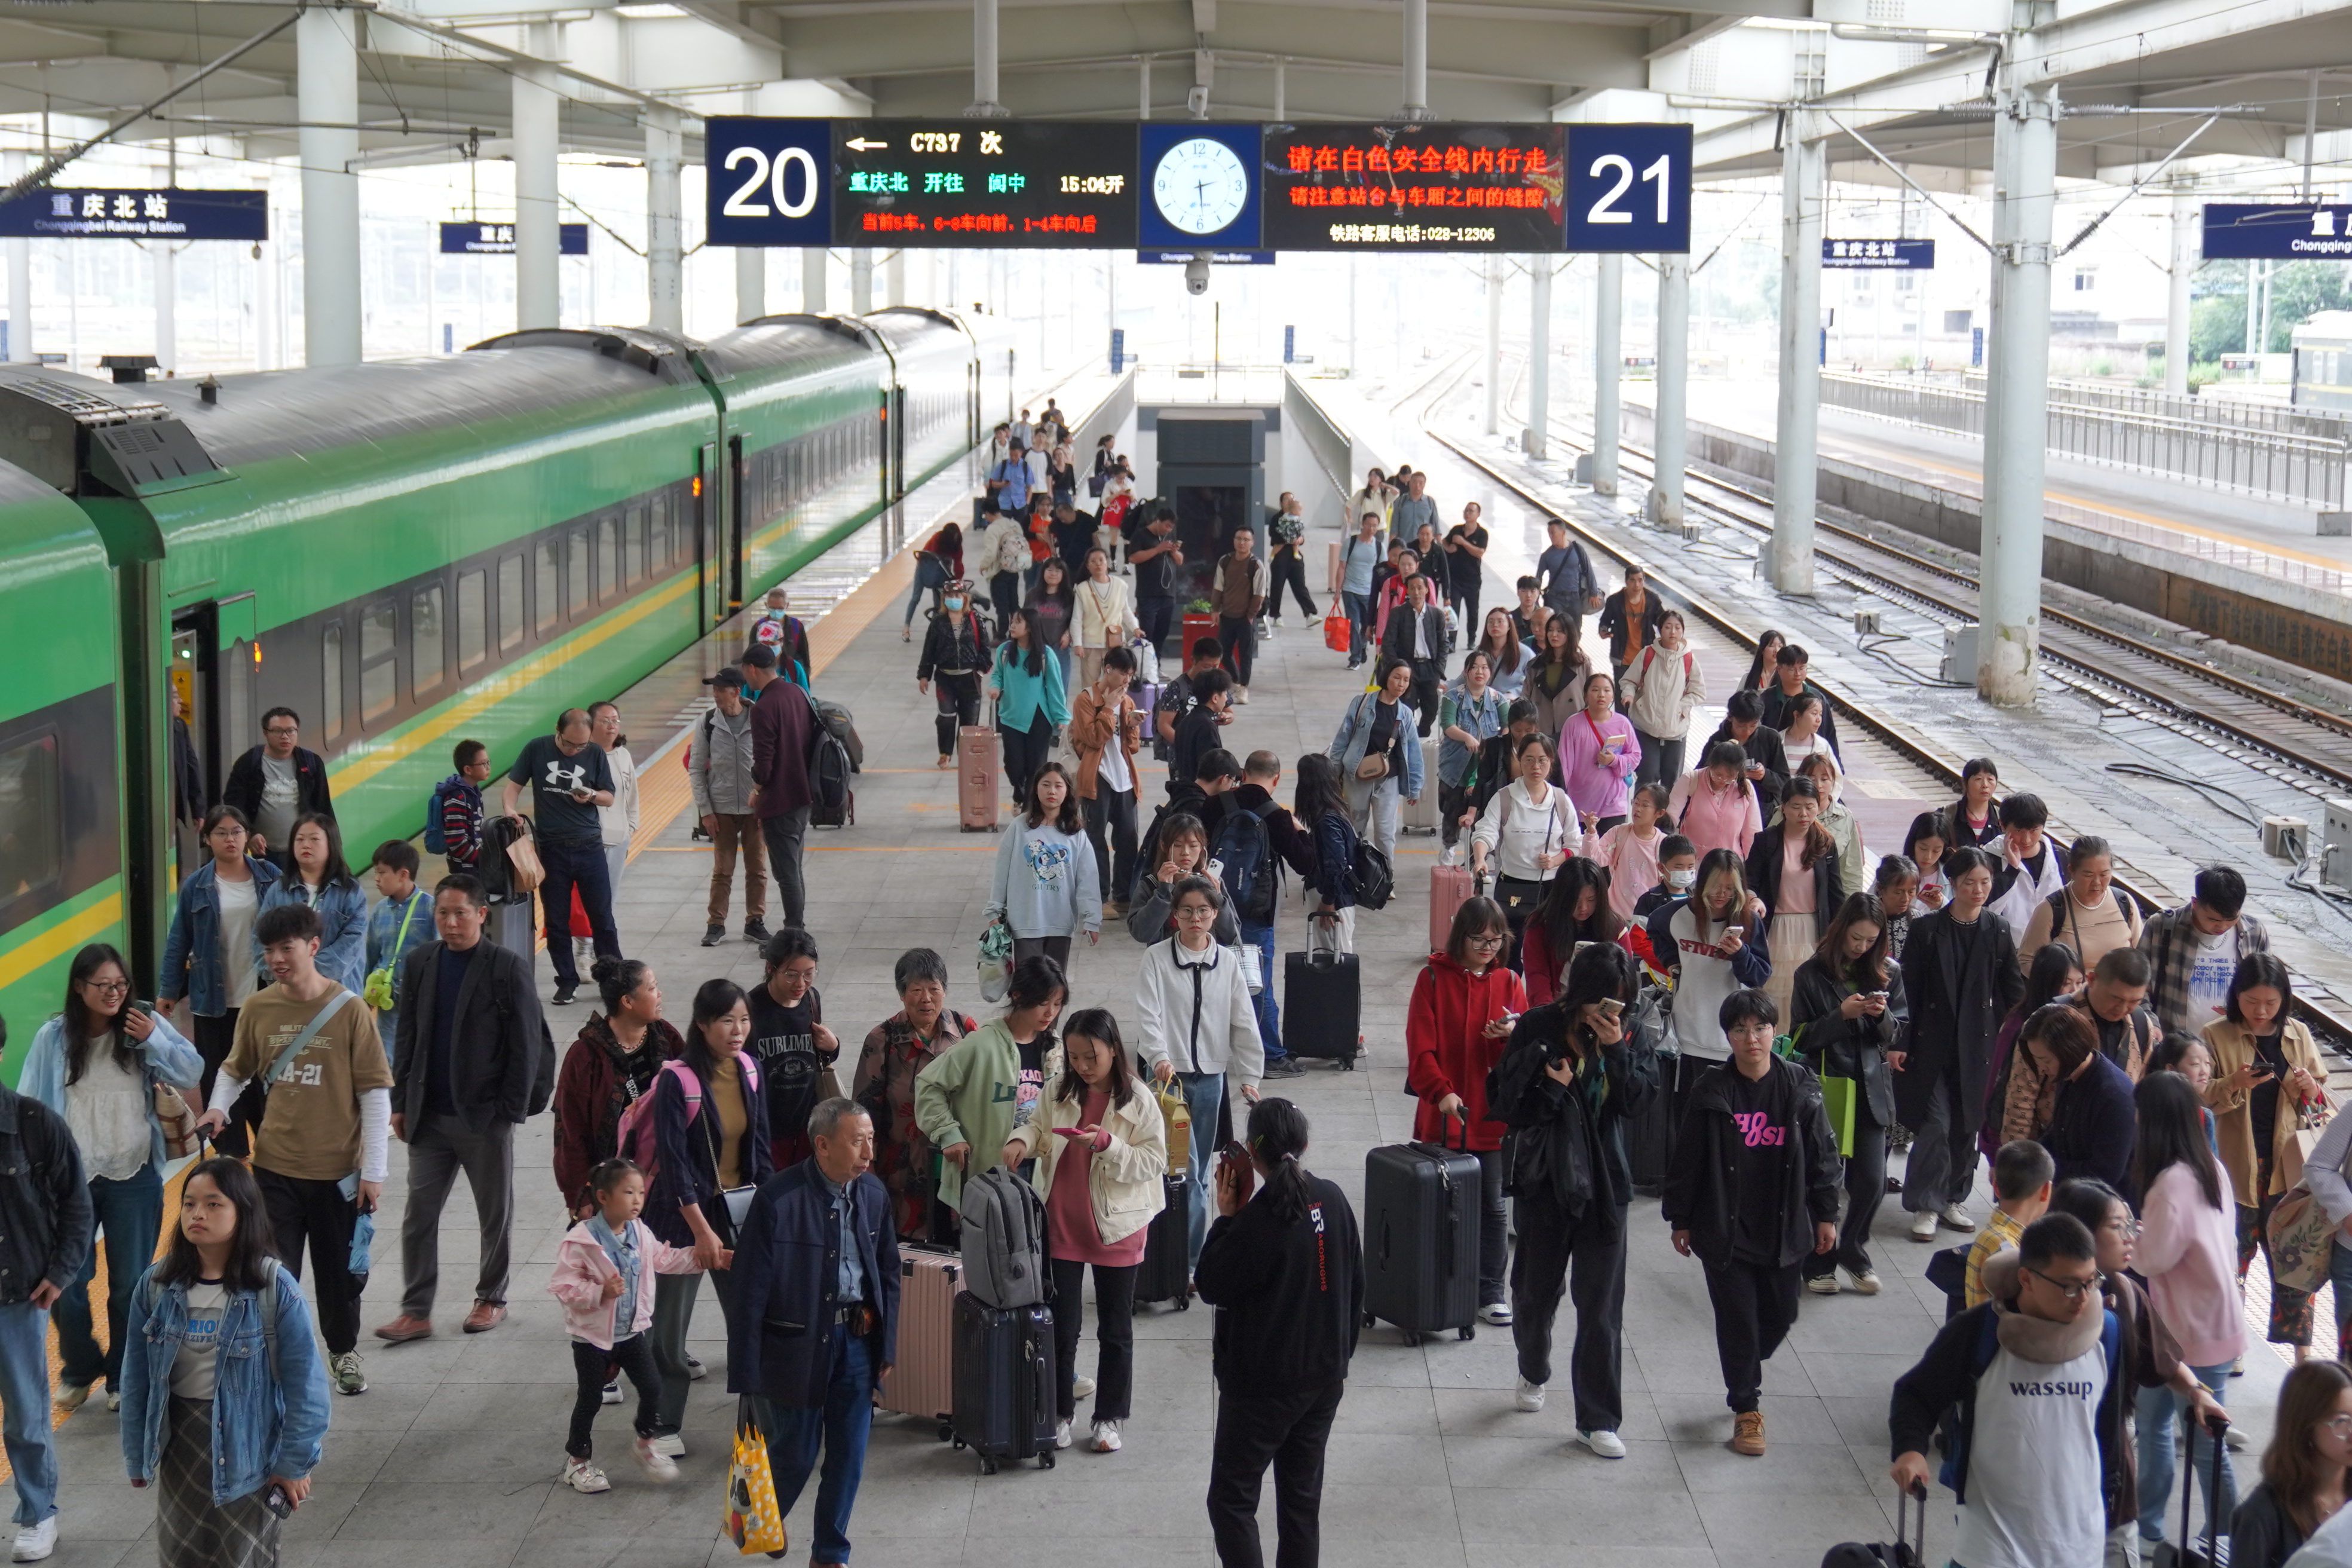 双节假期返程 重庆铁路部门预计发送旅客63.5万余人次